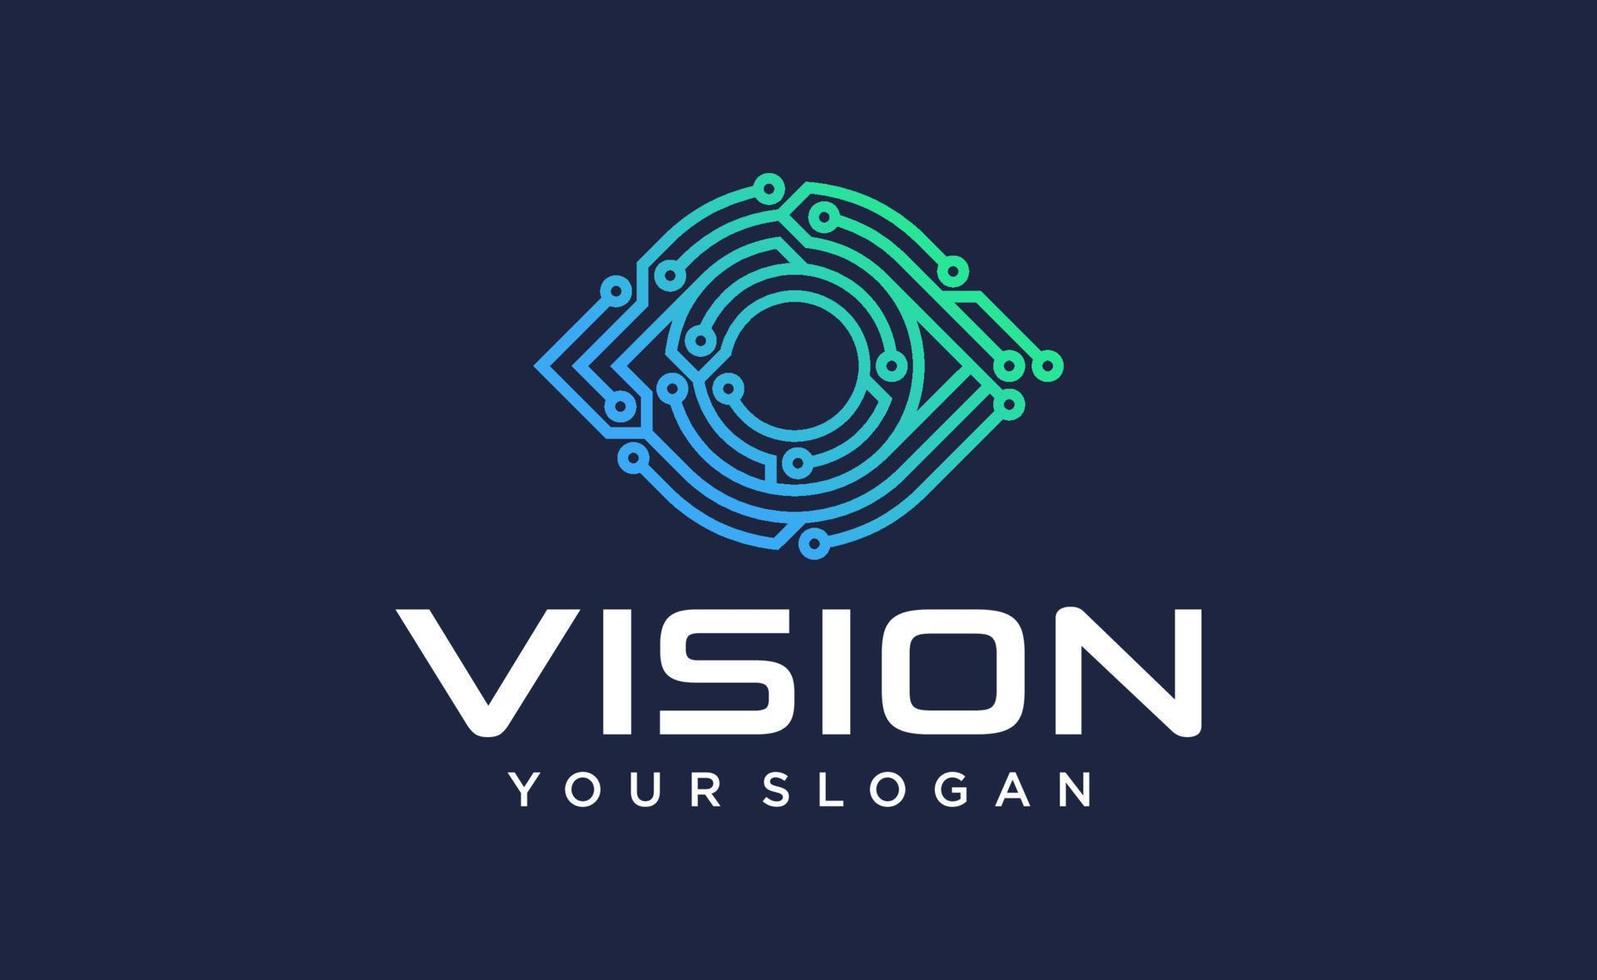 Eye Logo design vector template. Colorful media icon. Vision Logotype concept idea.